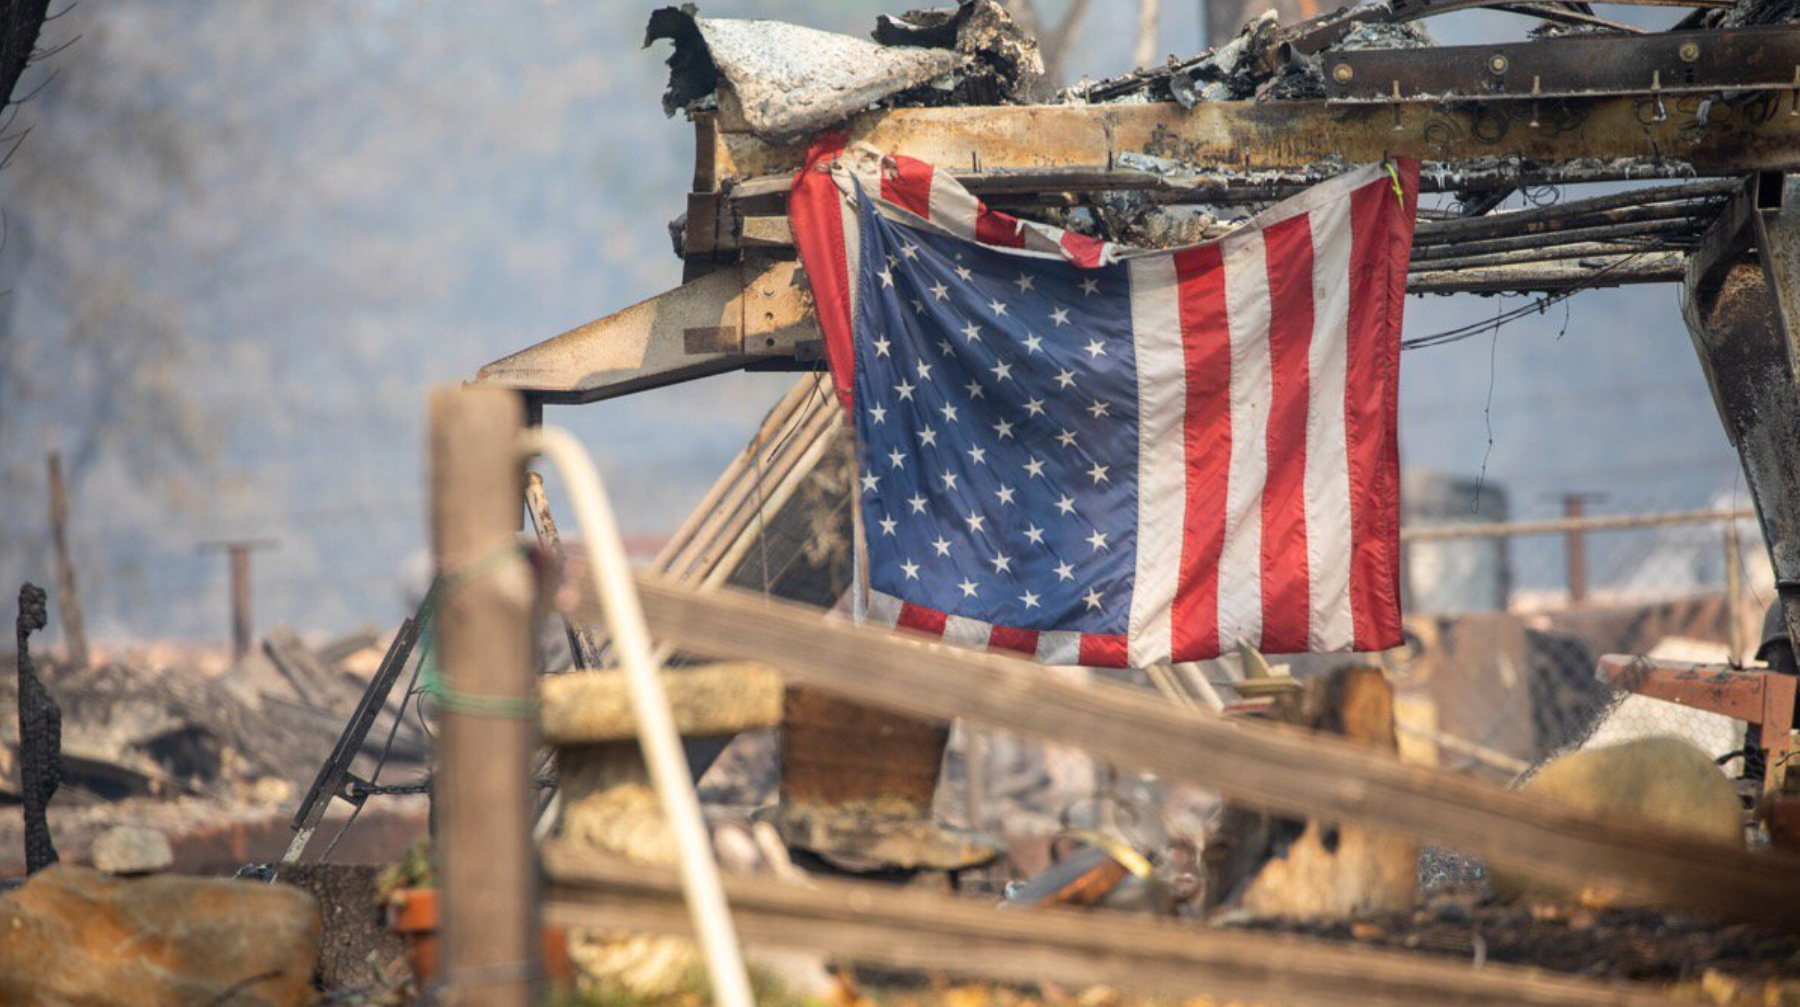 В результате лесного пожара уничтожен город Парадайс, погибли по меньшей мере 85 человек, 249 числятся пропавшими без вести Фото: © GLOBAL LOOK Press / White House / Twitter.com